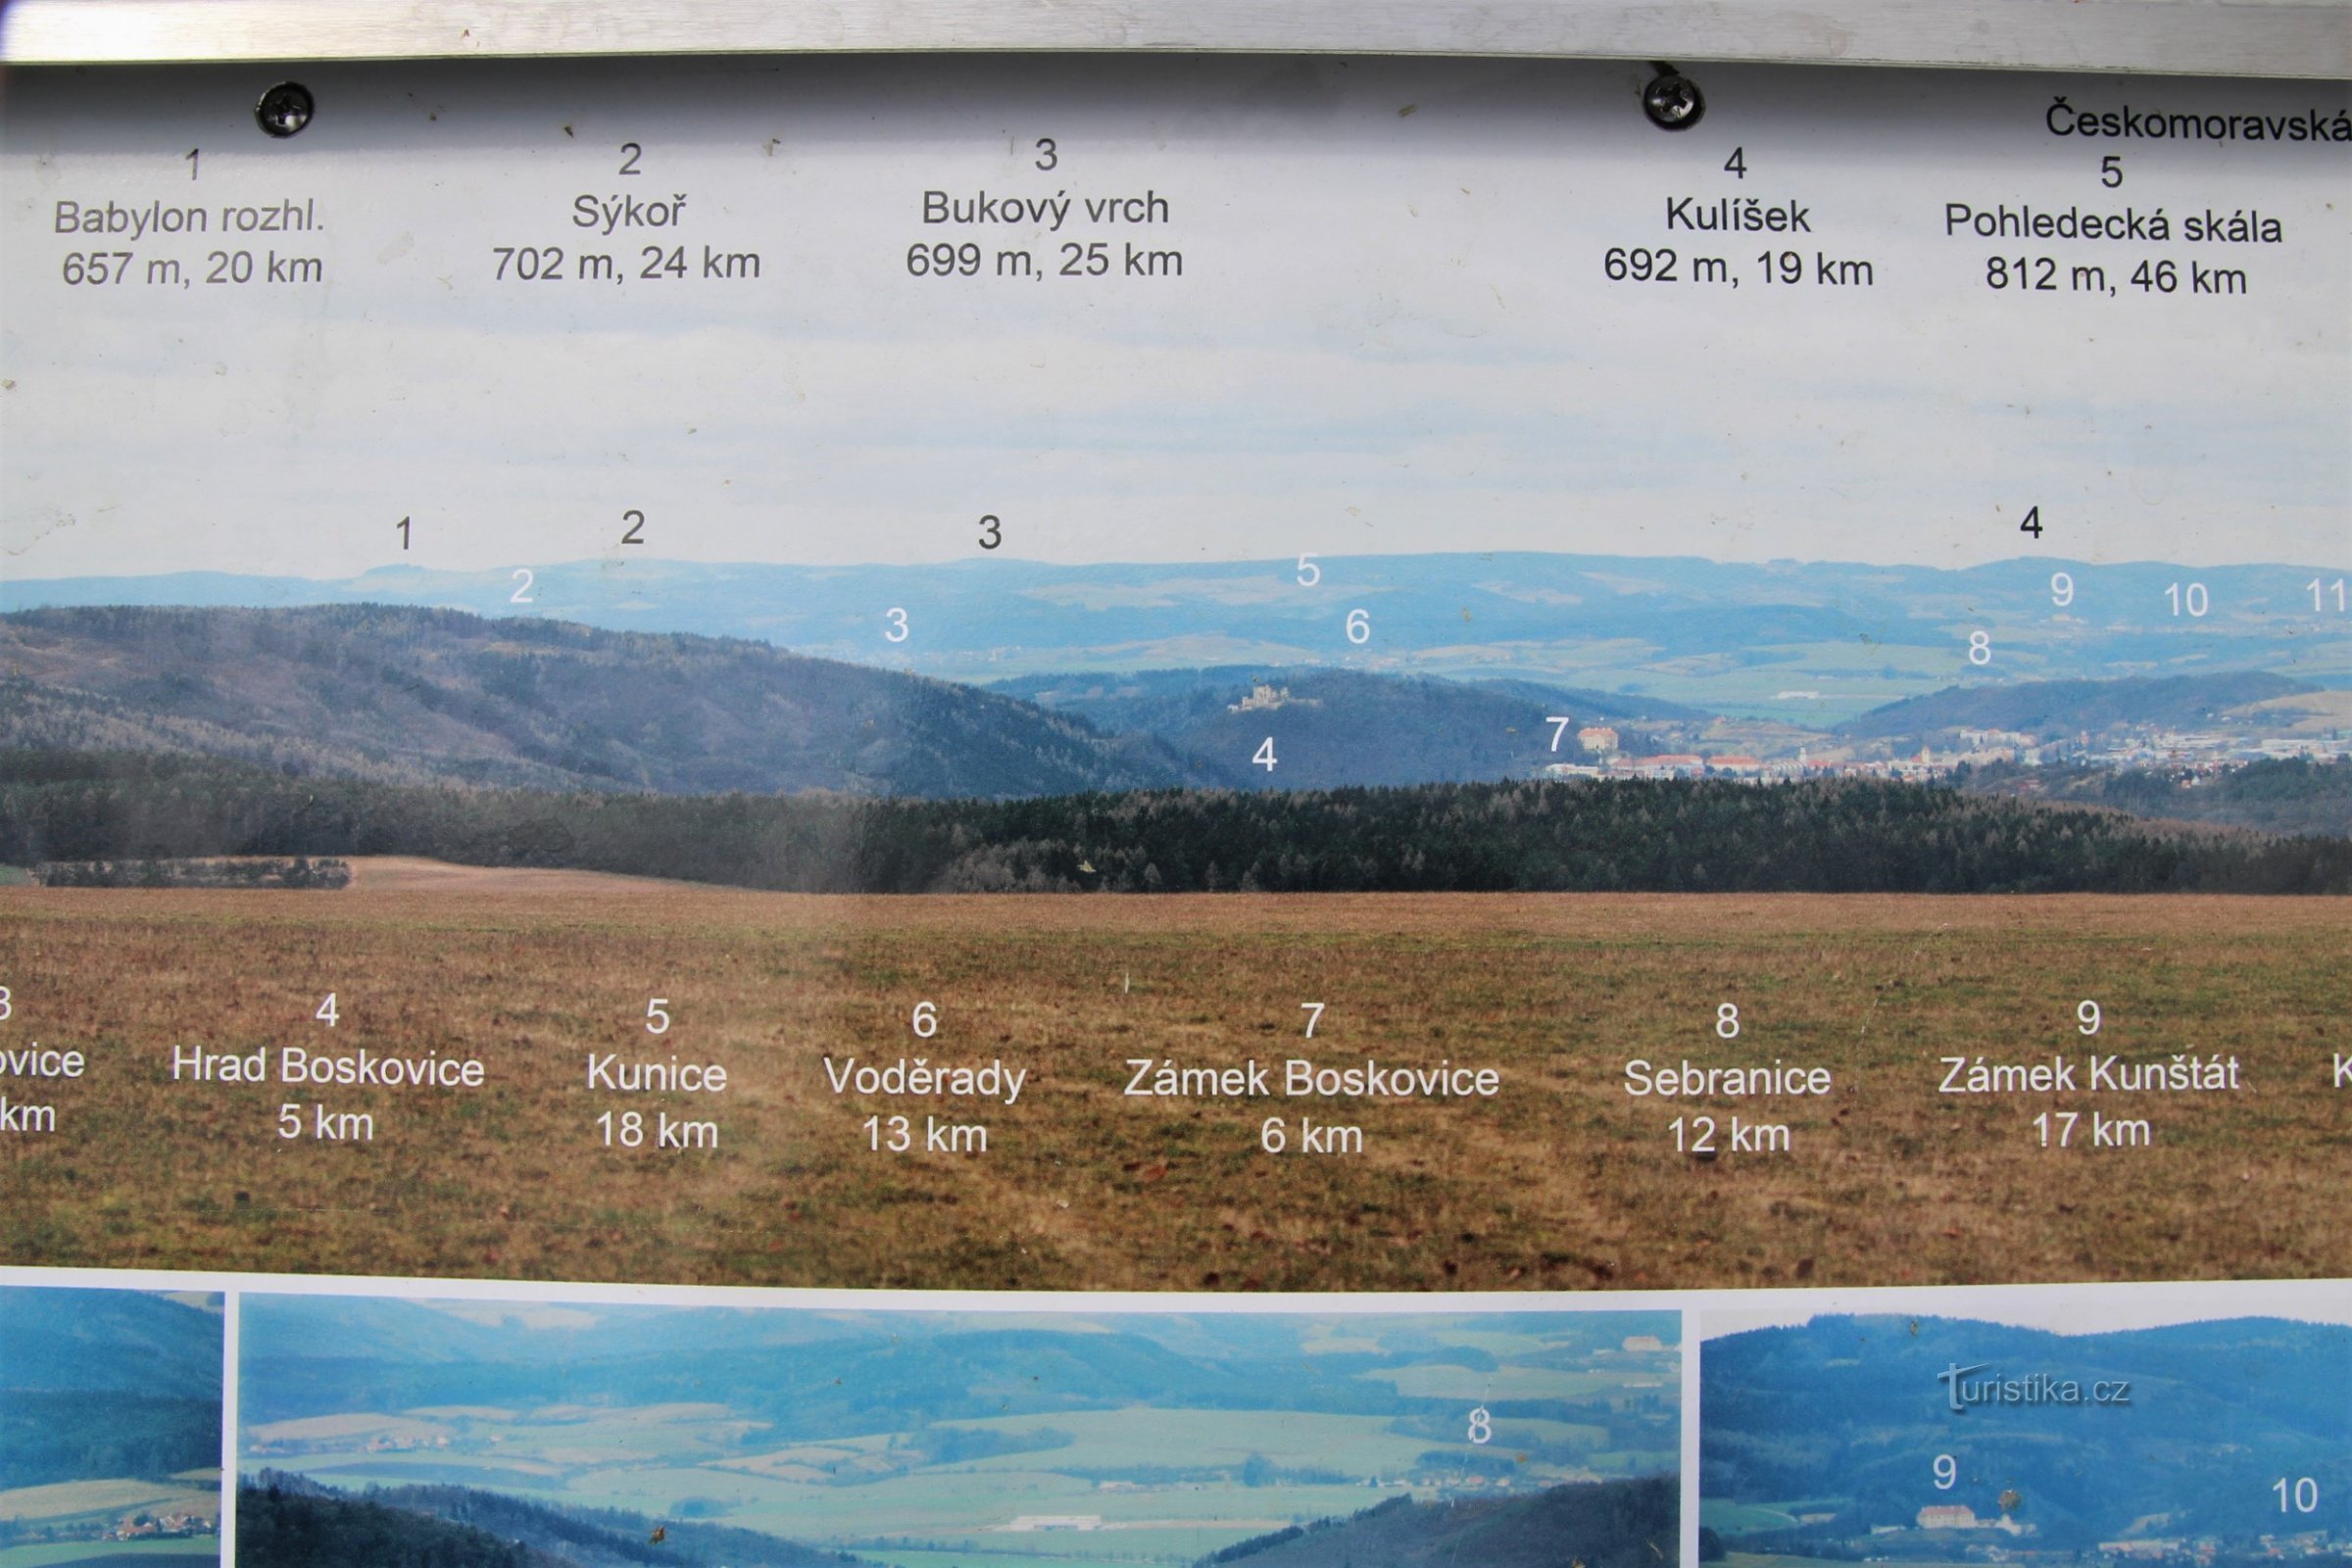 Панель с панорамой и описанием